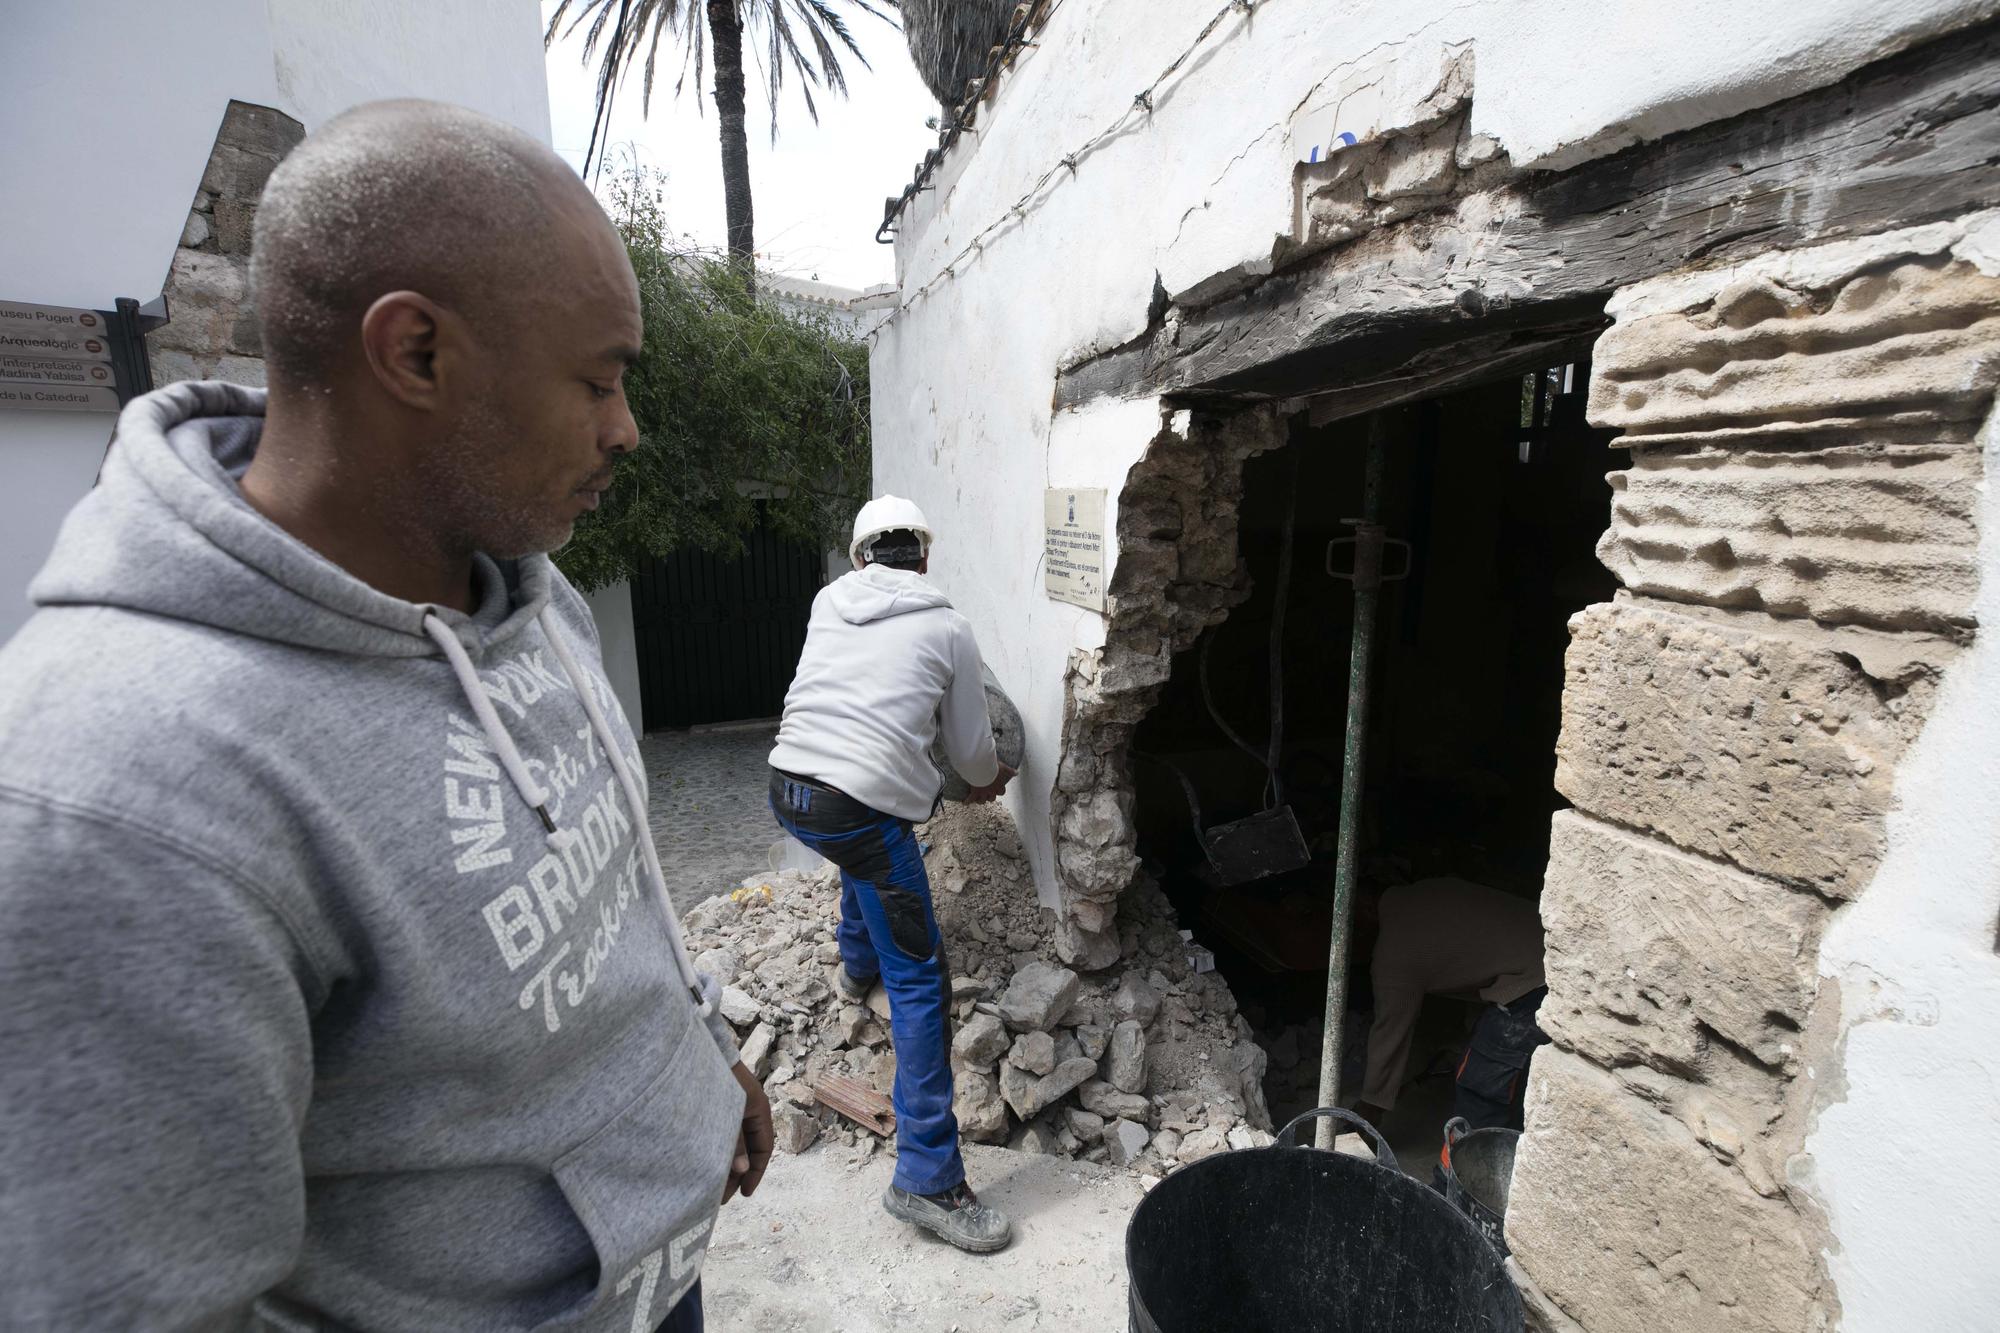 Galería de imágenes del toro mecánico siniestrado contra una casa en Ibiza